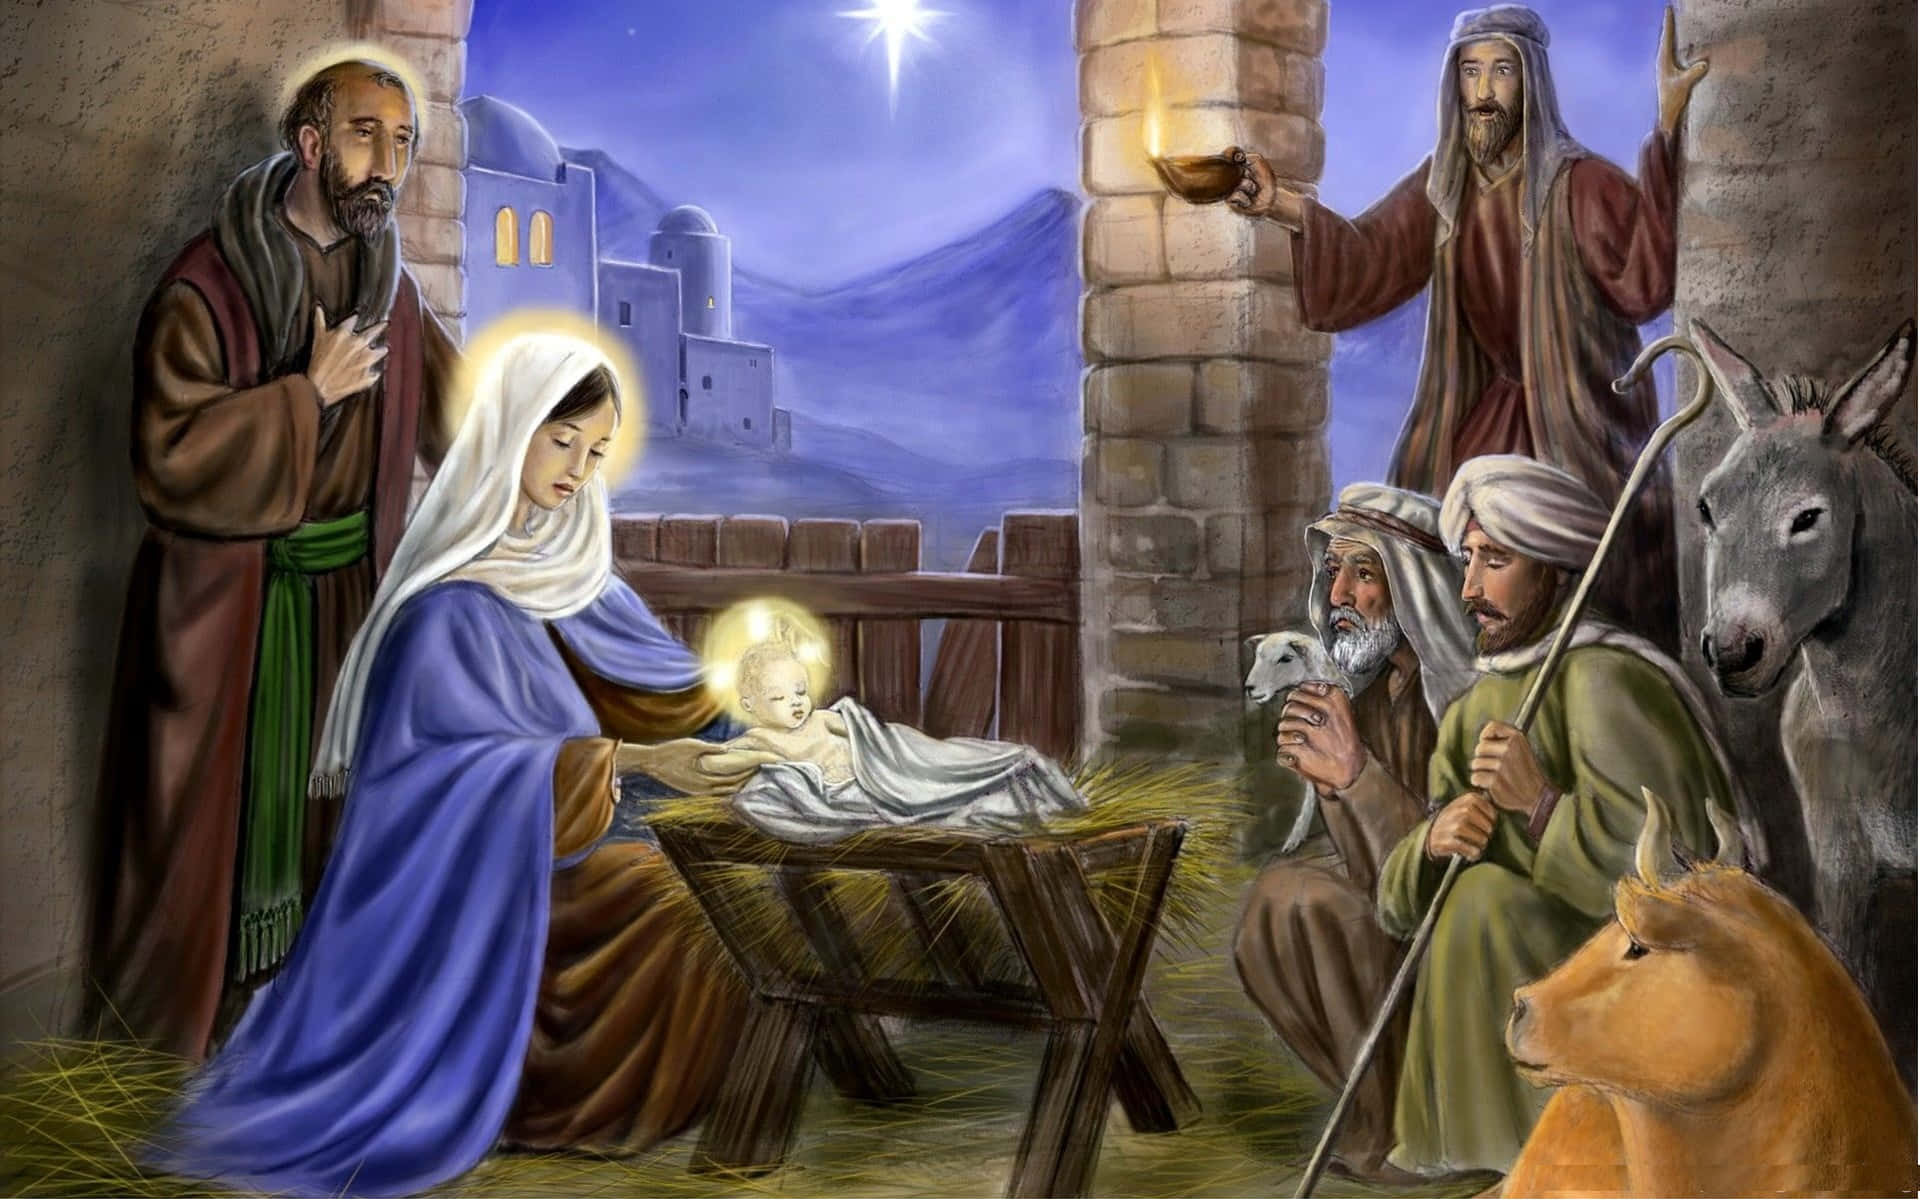 Joyful celebration of the Nativity